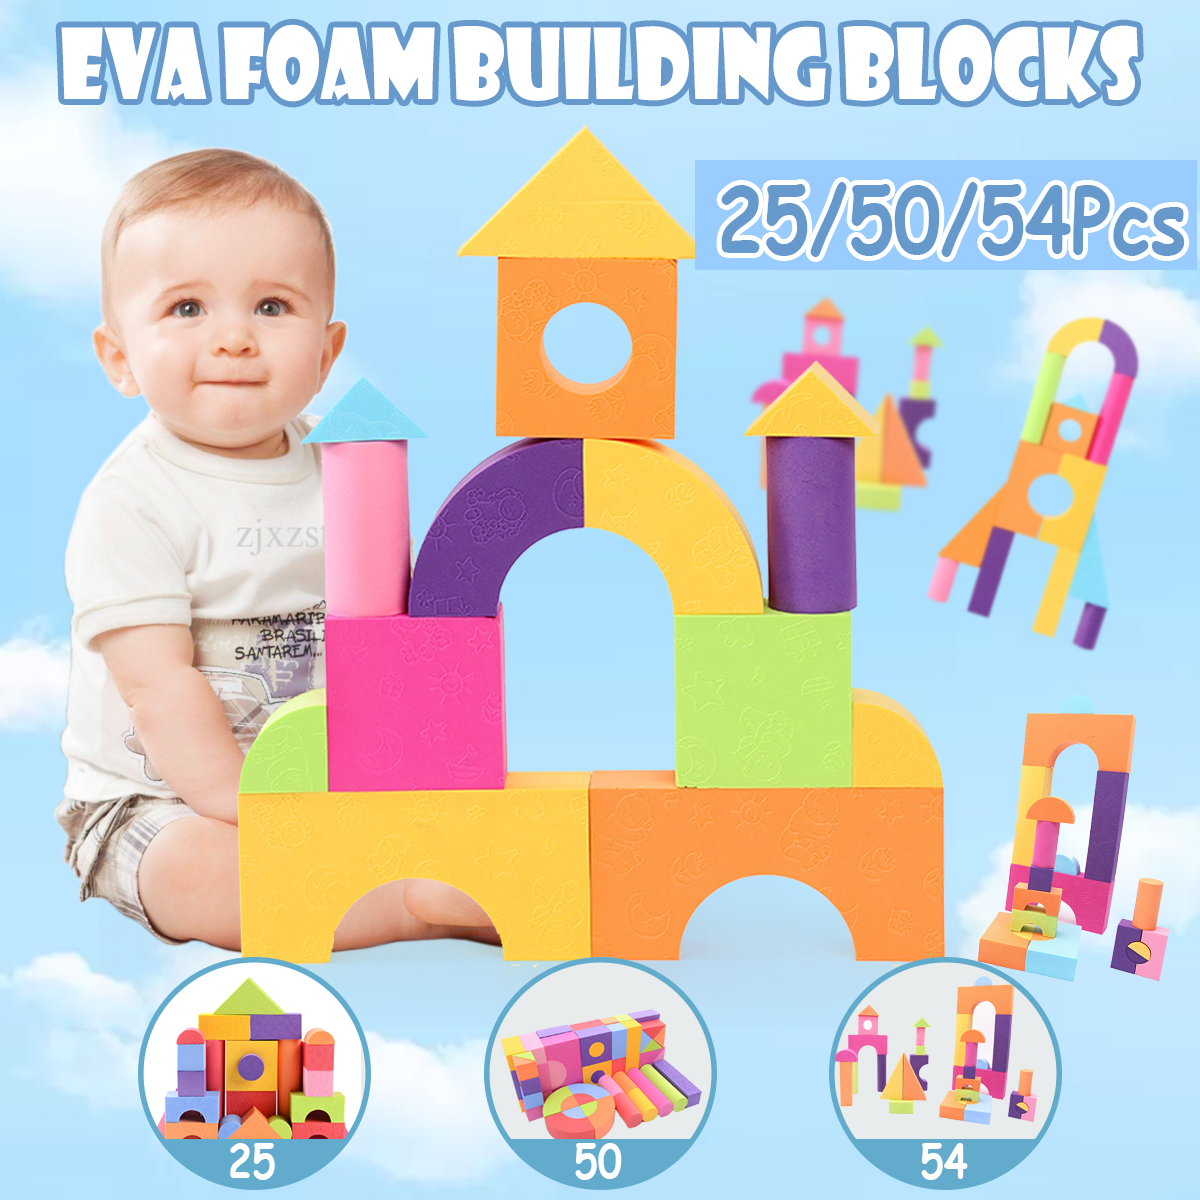 50Pcs EVA Foam Assembled Bricks DIY Model Building Blocks Kids Educational Toys